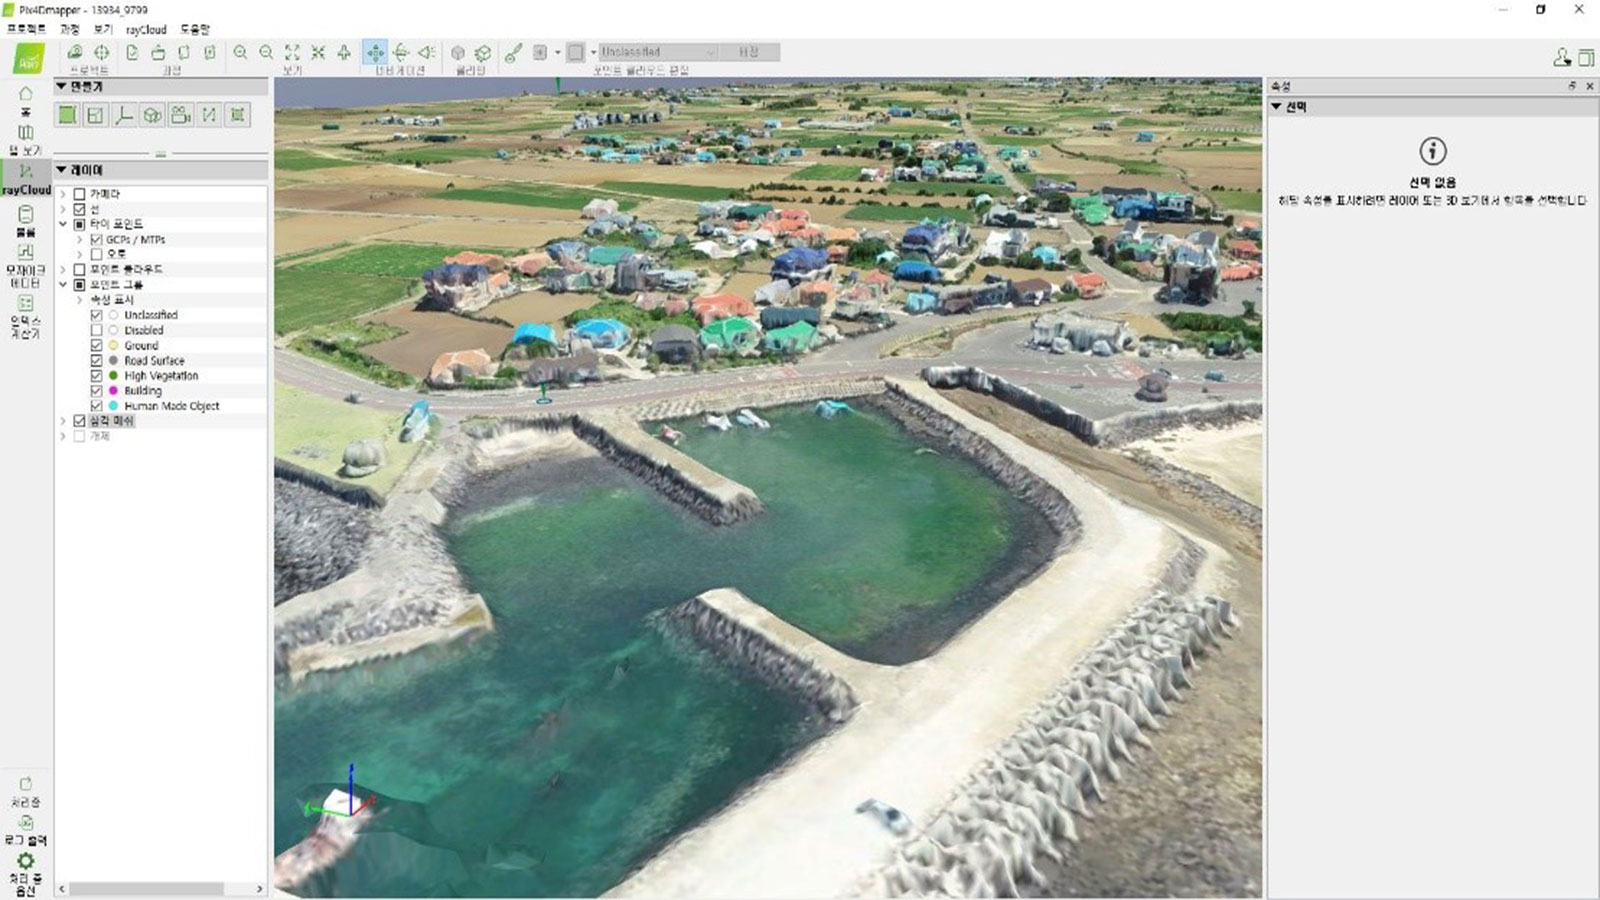 Coastline digitized in PIX4Dmapper UI